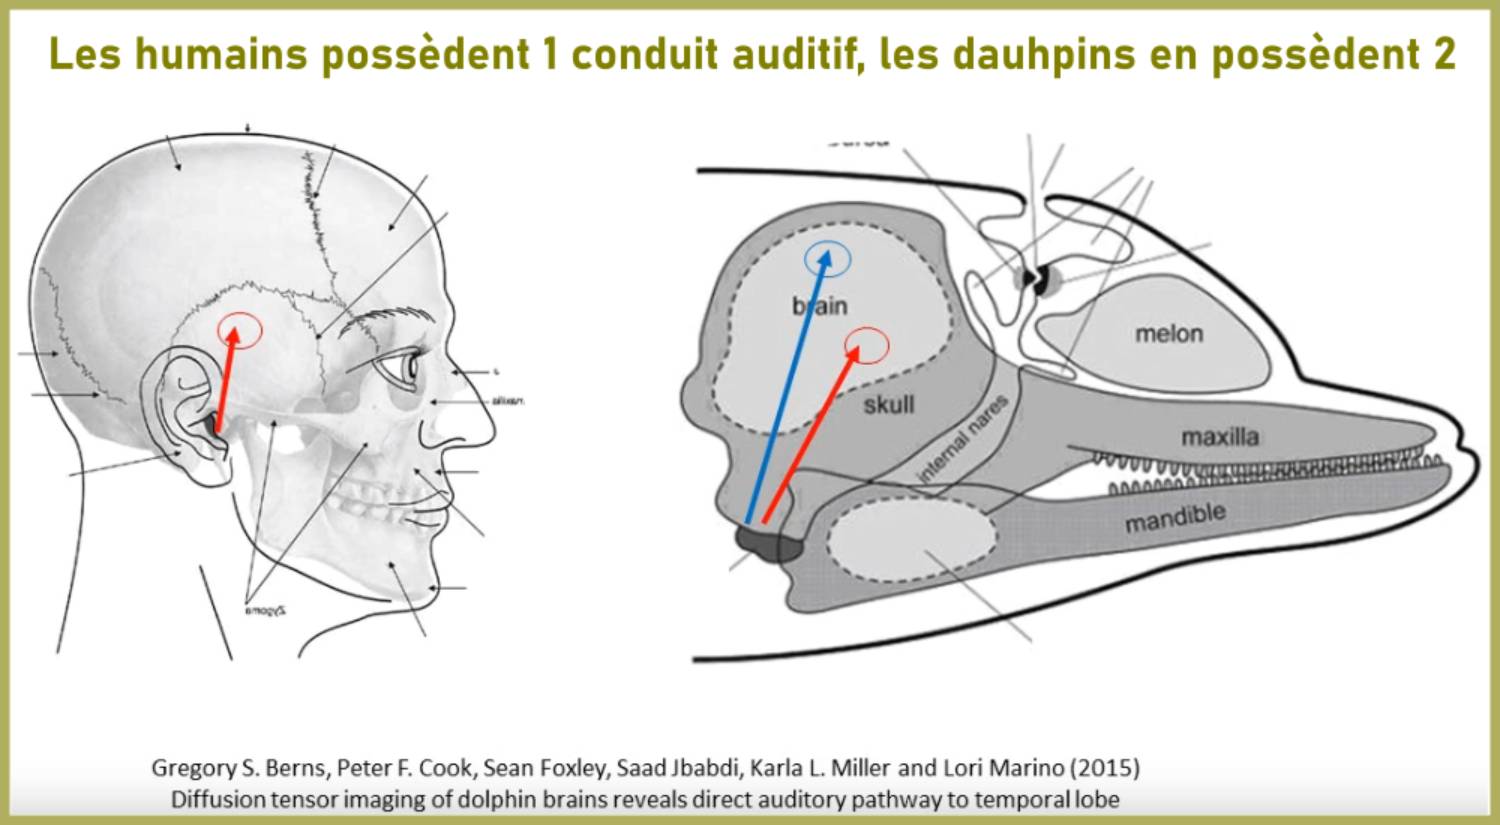 Conduit auditif cerveau dauphin humain